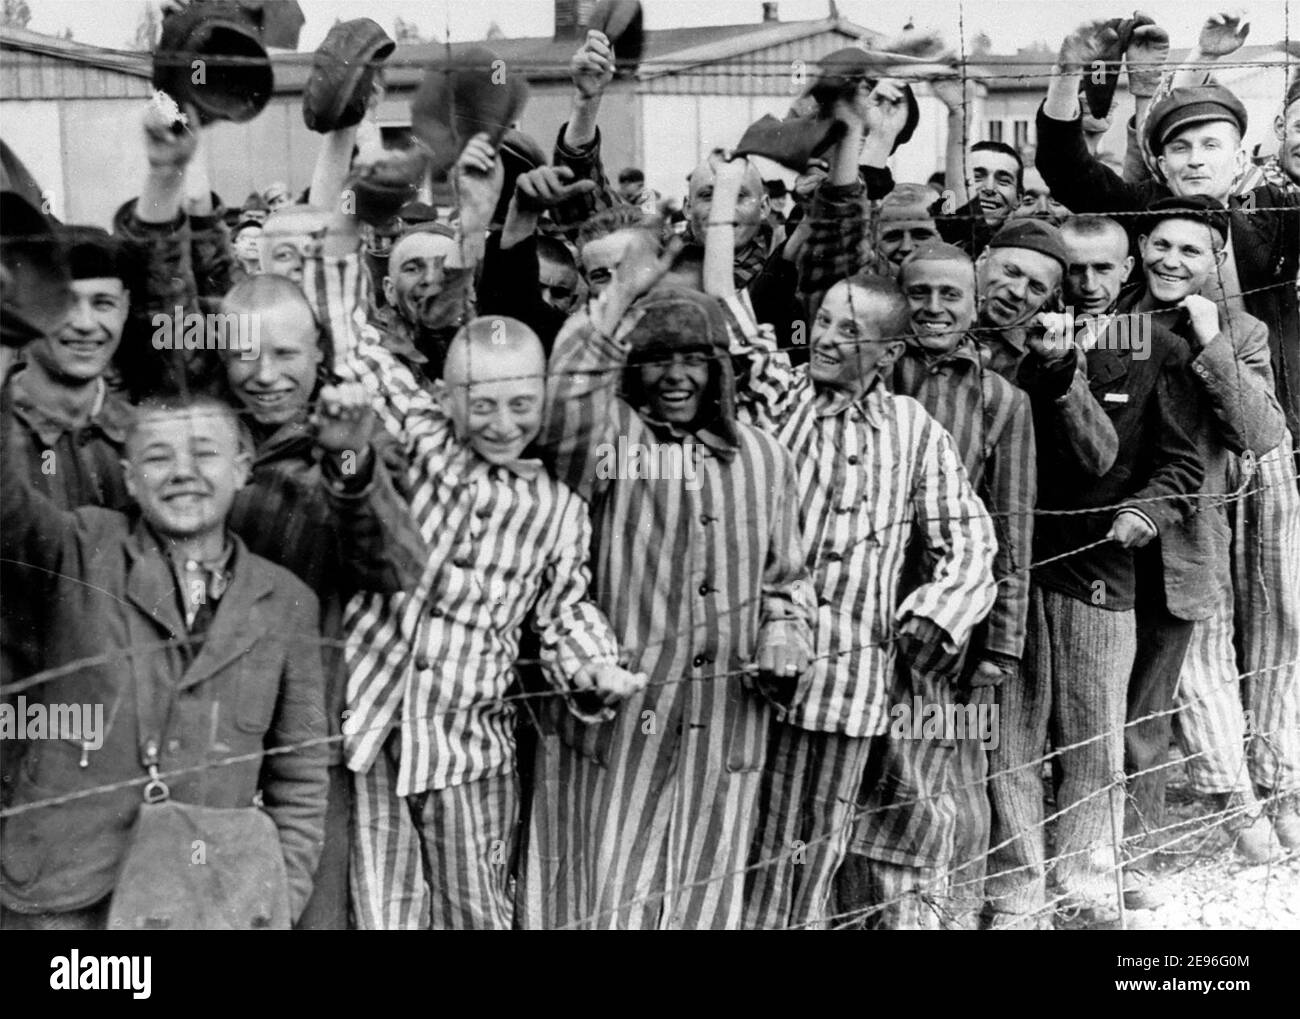 Les jeunes et les vieux survivants de Dachau applaudissent à l'approche des troupes américaines, le 29 avril 1945 Banque D'Images